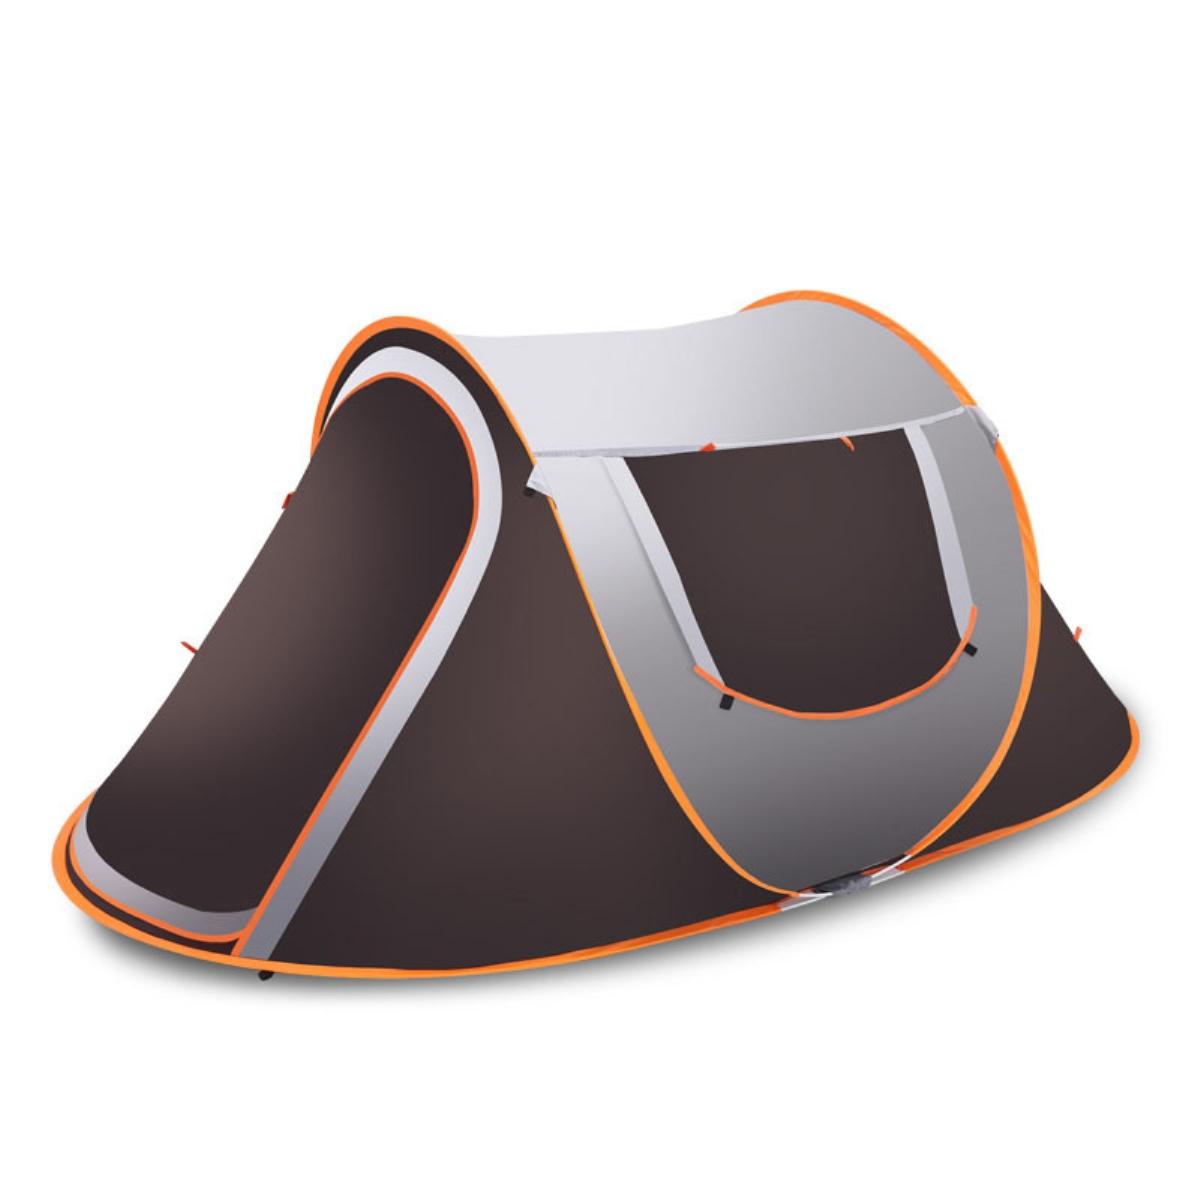 Tenda instantânea para 3-4 pessoas, à prova d'água, com sombra para o sol e proteção contra a chuva, ideal para camping e caminhadas.